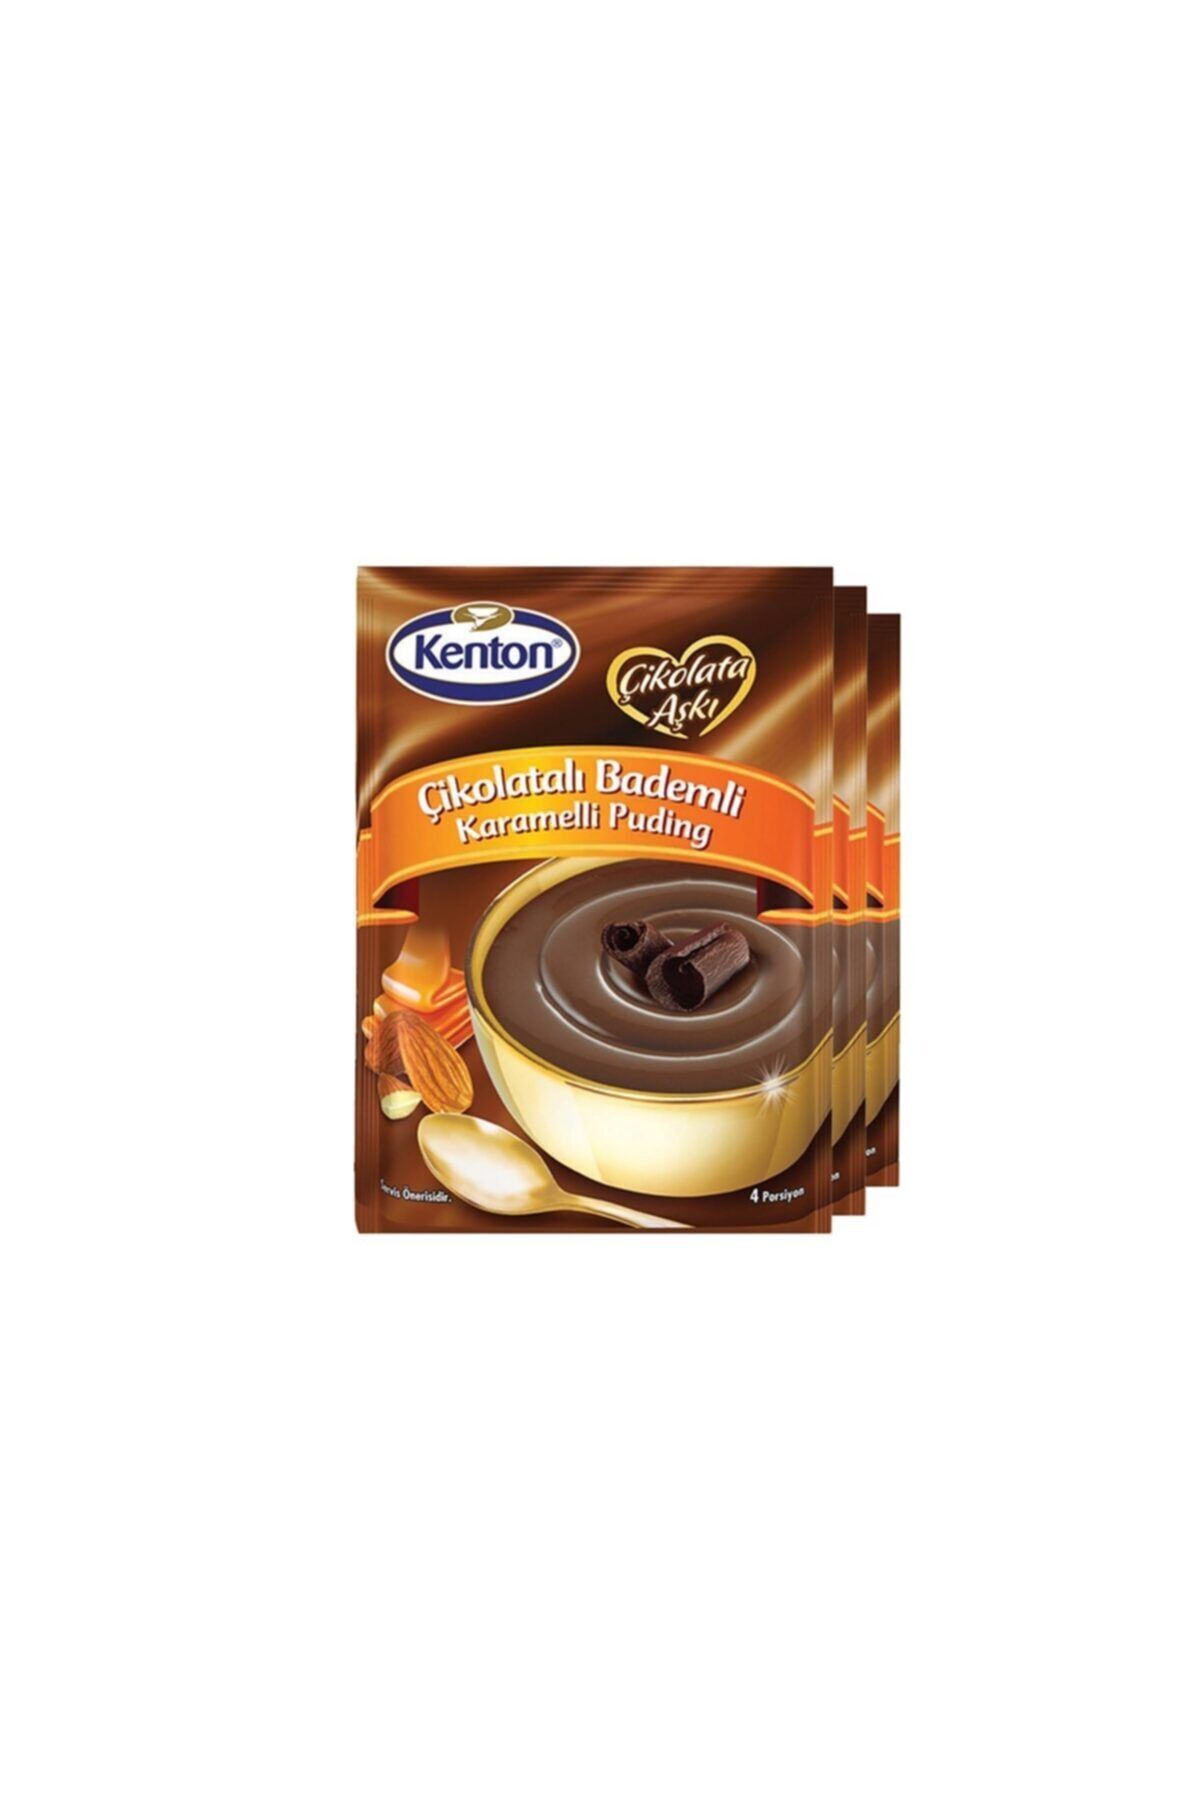 Kenton Çikolata Aşkı Bitter Çikolatalı Puding 100 gr X 3'lü Paket